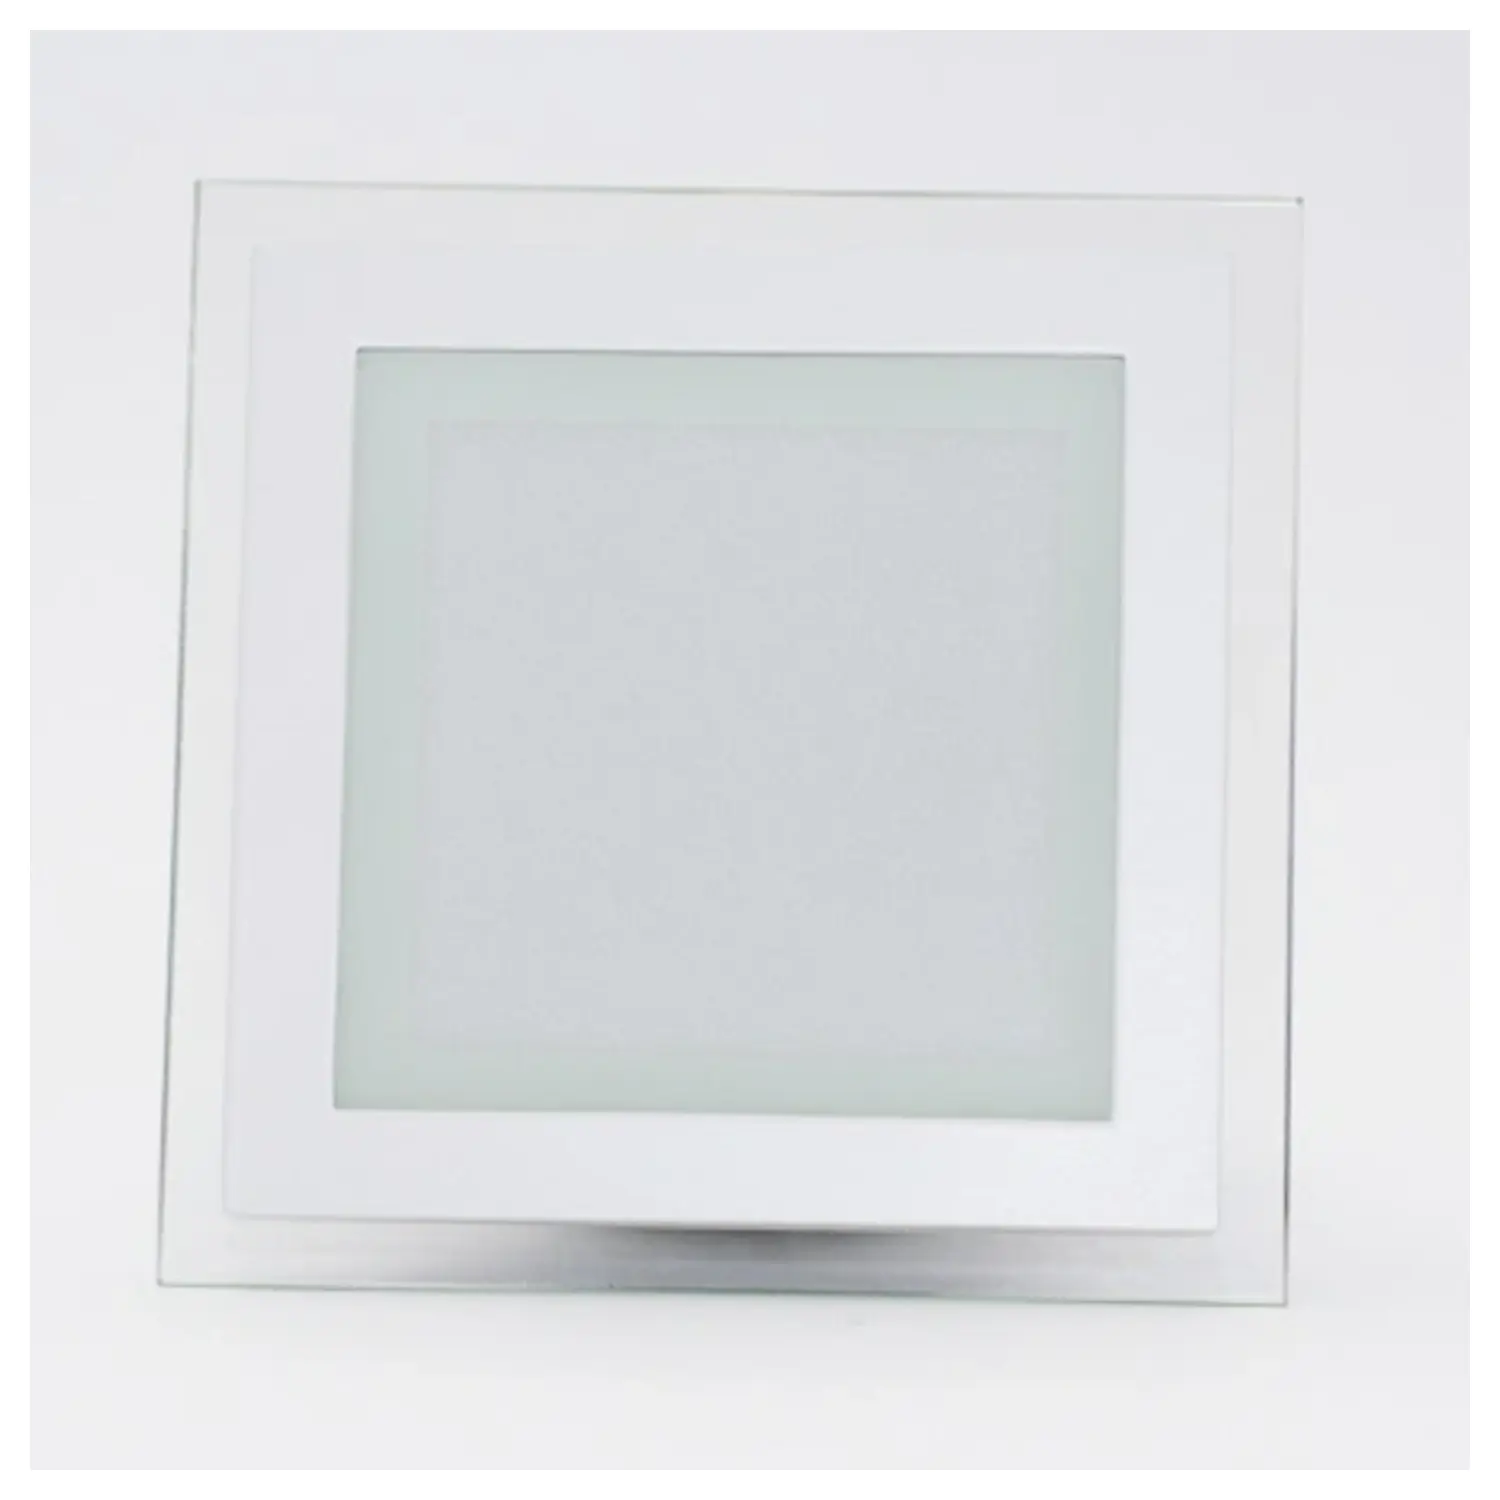 immagine mini pannel incasso cornice vetro quadrato IP20 fisso CE bianco caldo bianco 6 watt 220-240 volt 120° tec 622877